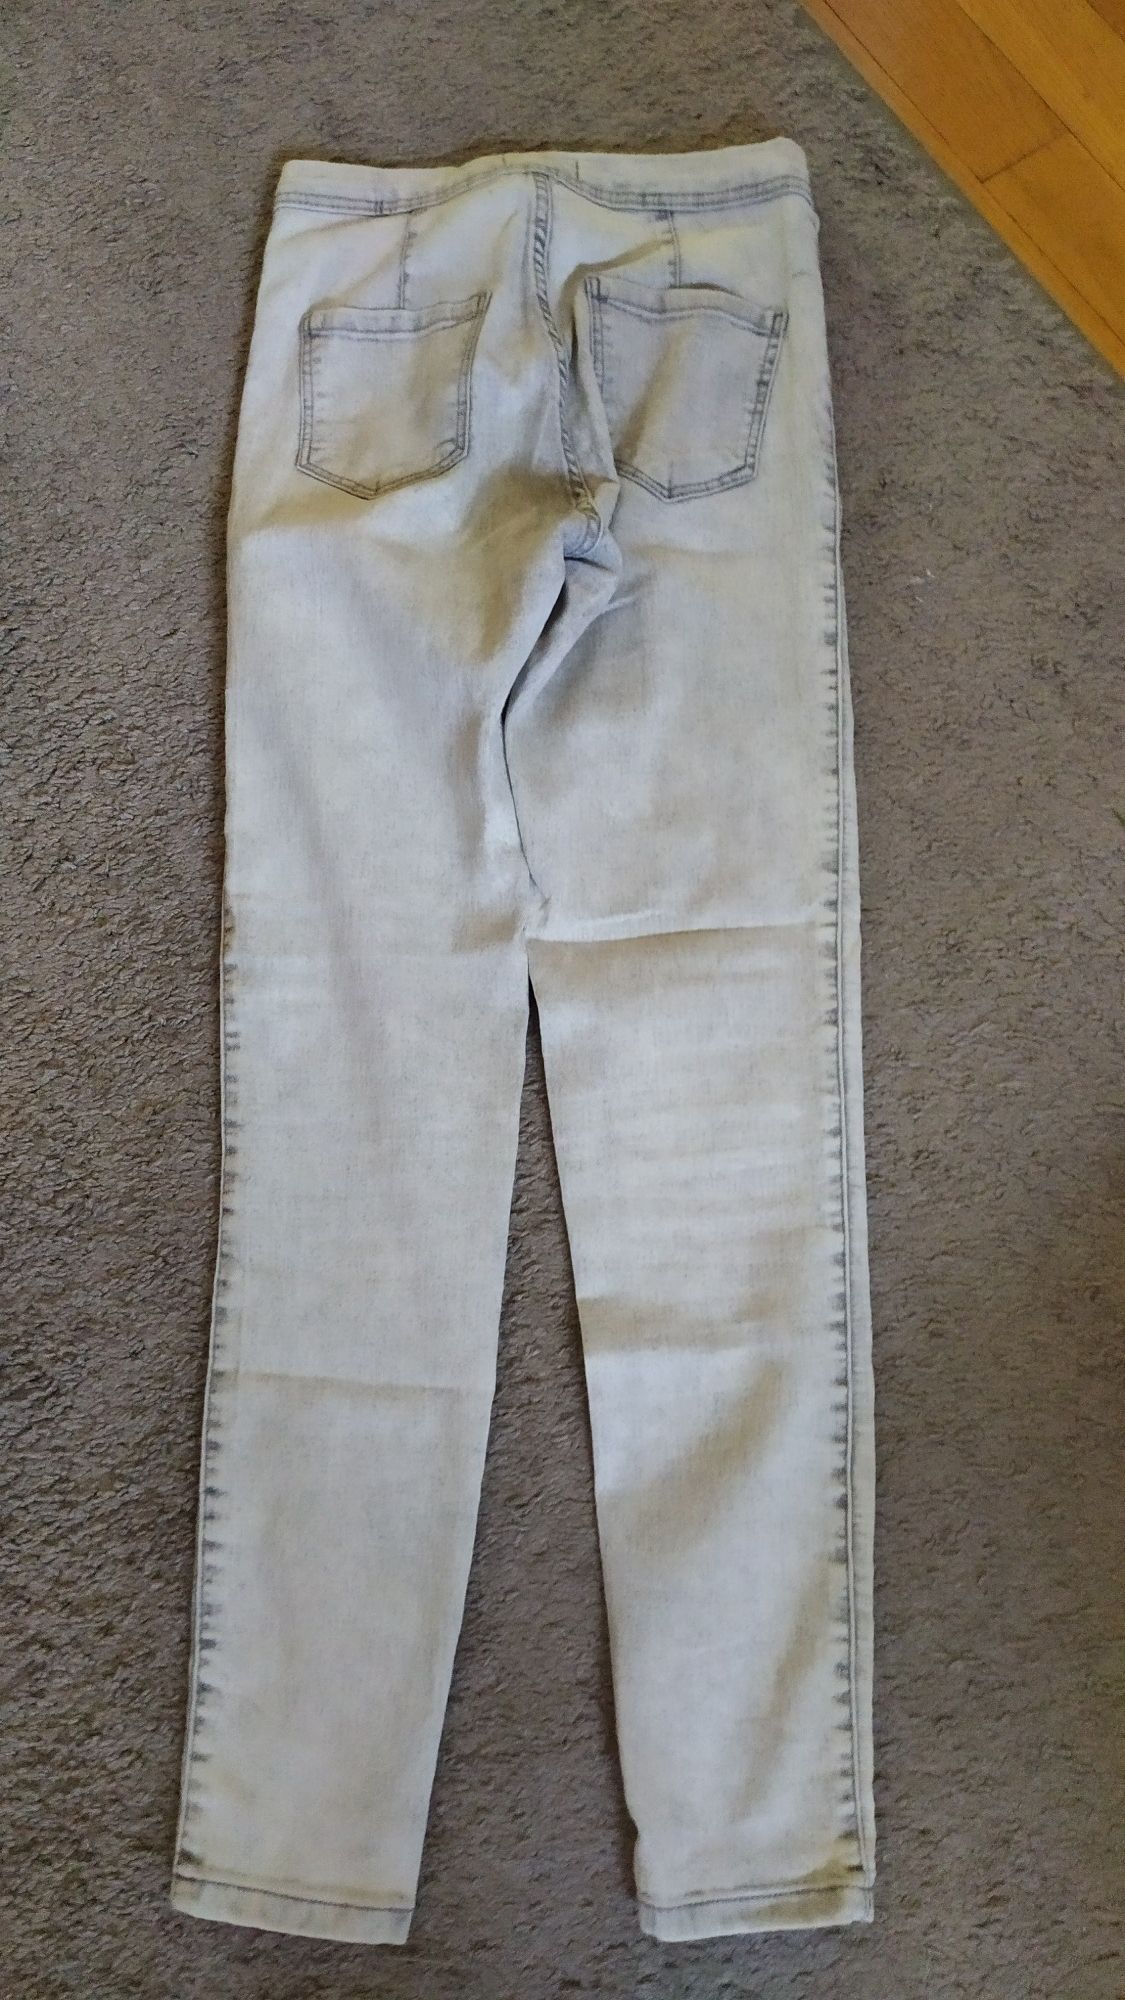 Spodnie Bershka jeansy jasne, biało-szare, 134cm